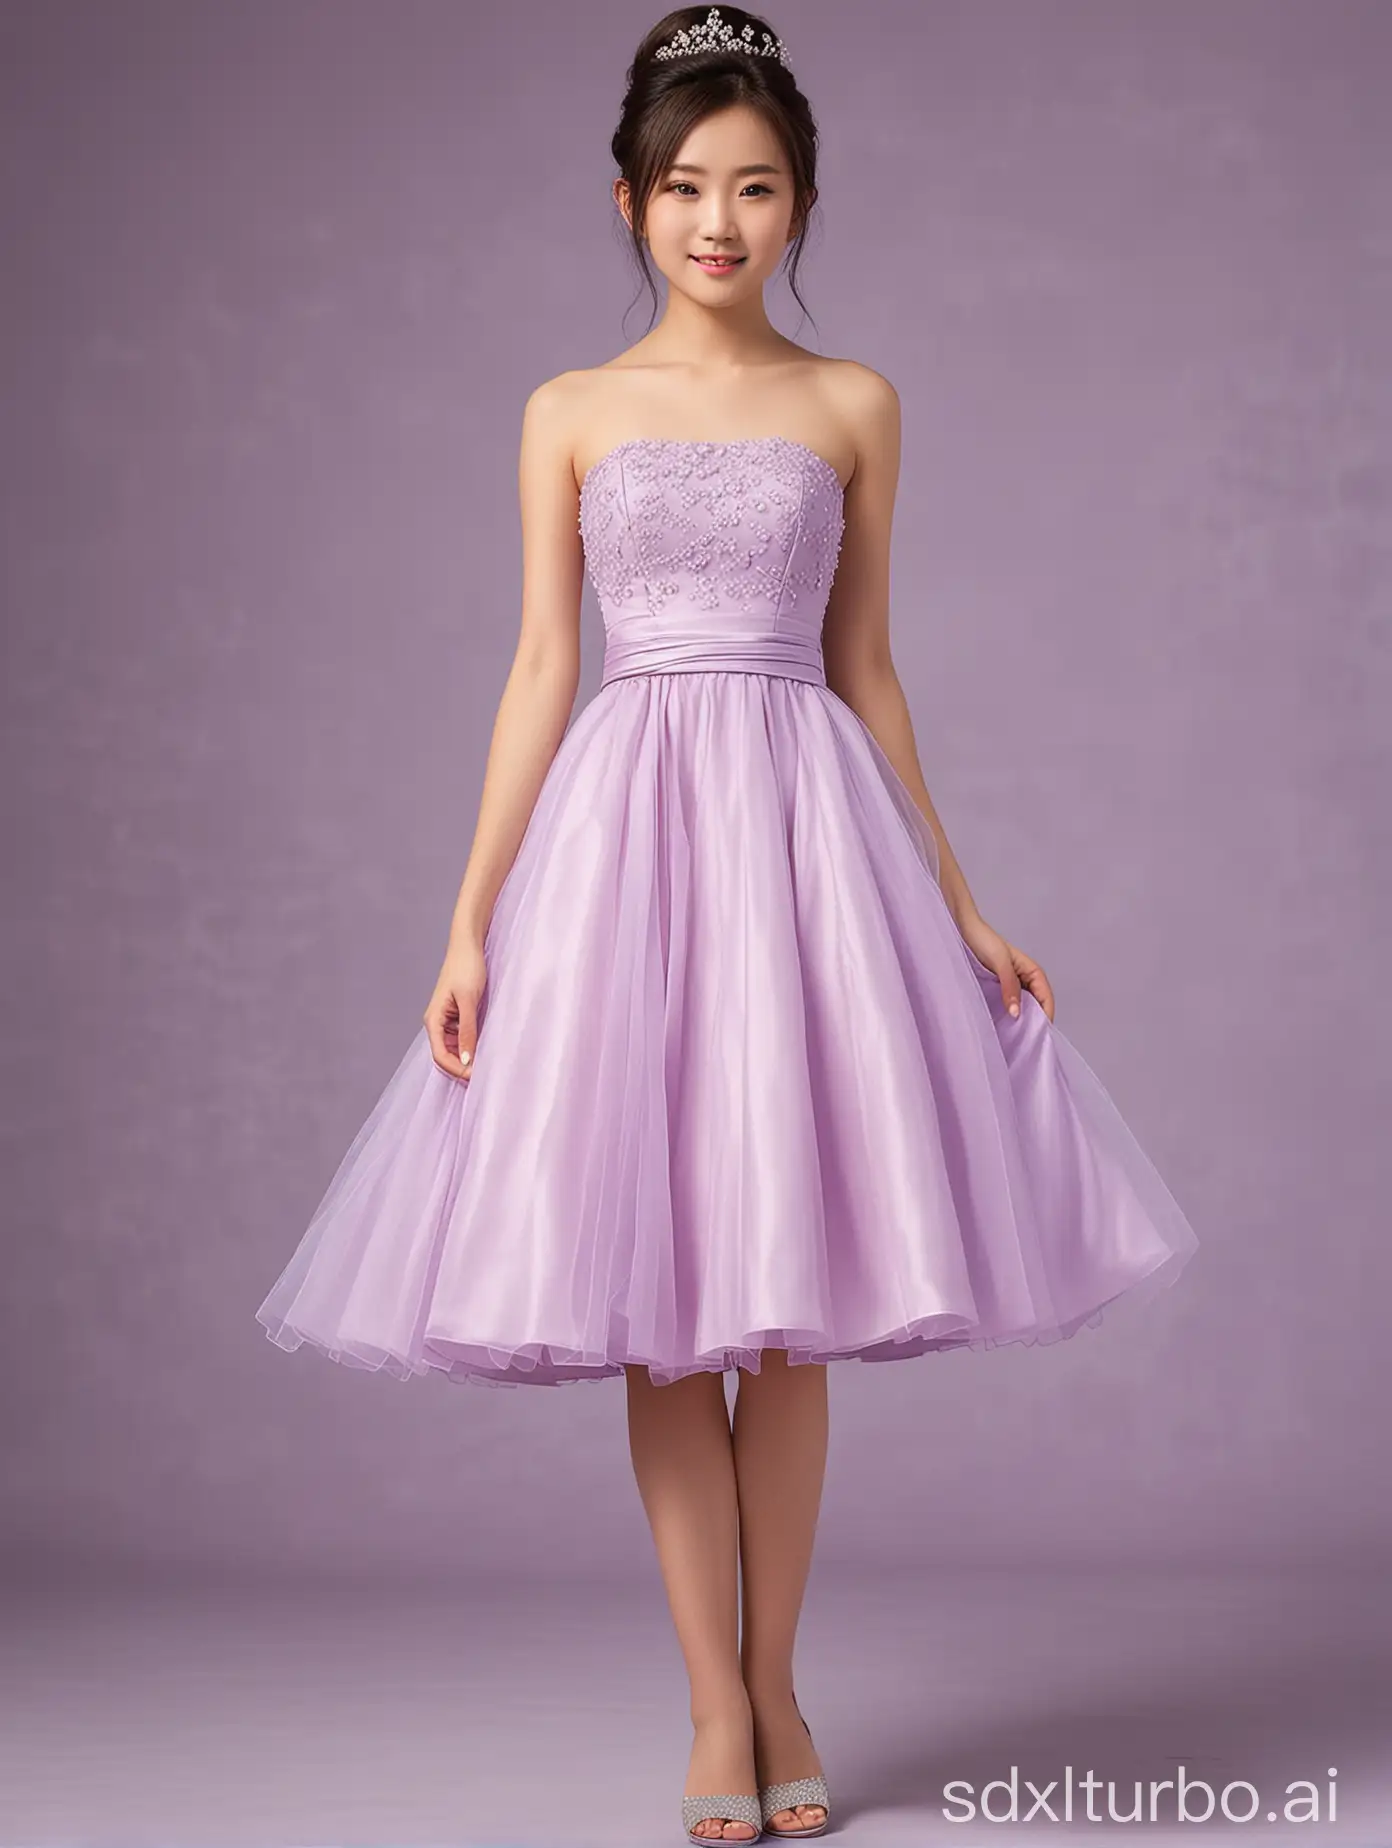 12yo,1girl,Japanese,light purple strapless short wedding dress,full body